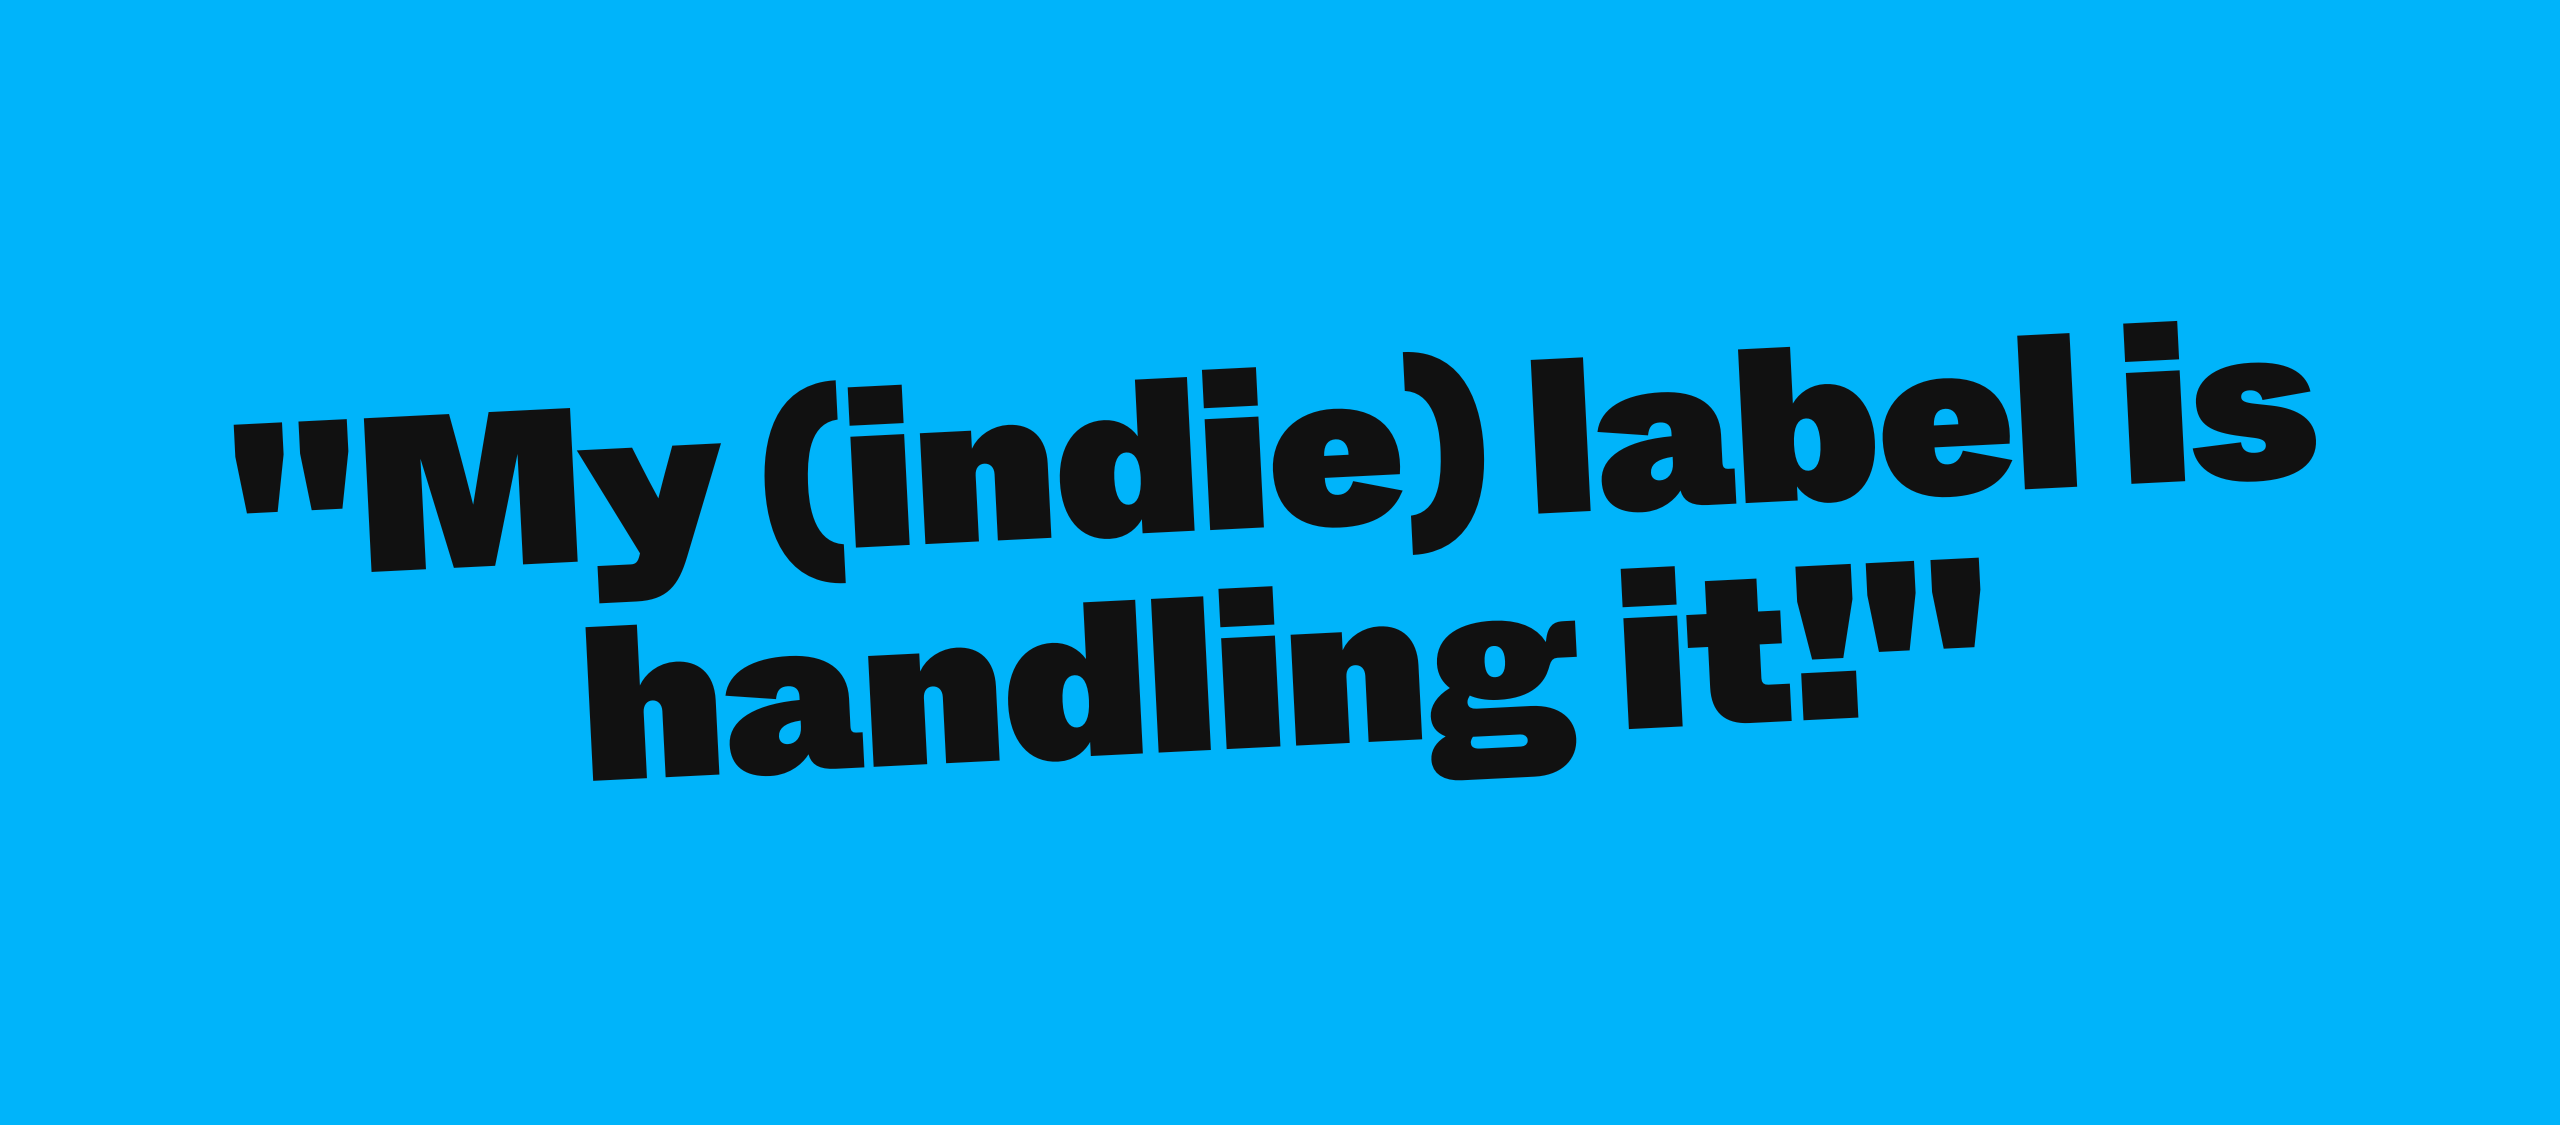 “My (Indie) label is handling it!”